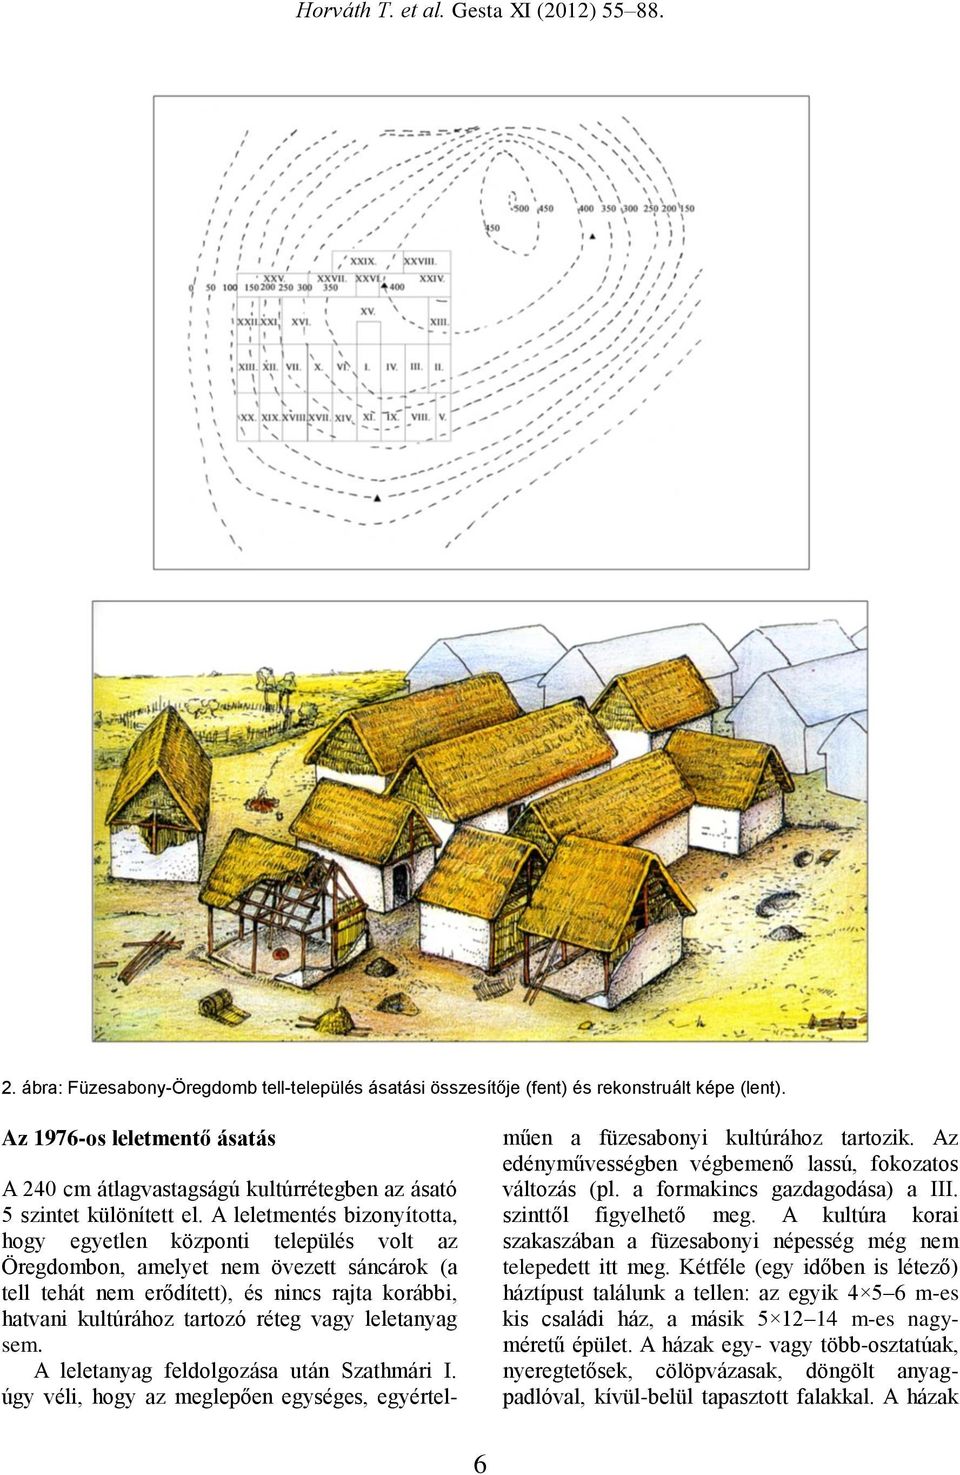 A leletmentés bizonyította, hogy egyetlen központi település volt az Öregdombon, amelyet nem övezett sáncárok (a tell tehát nem erődített), és nincs rajta korábbi, hatvani kultúrához tartozó réteg